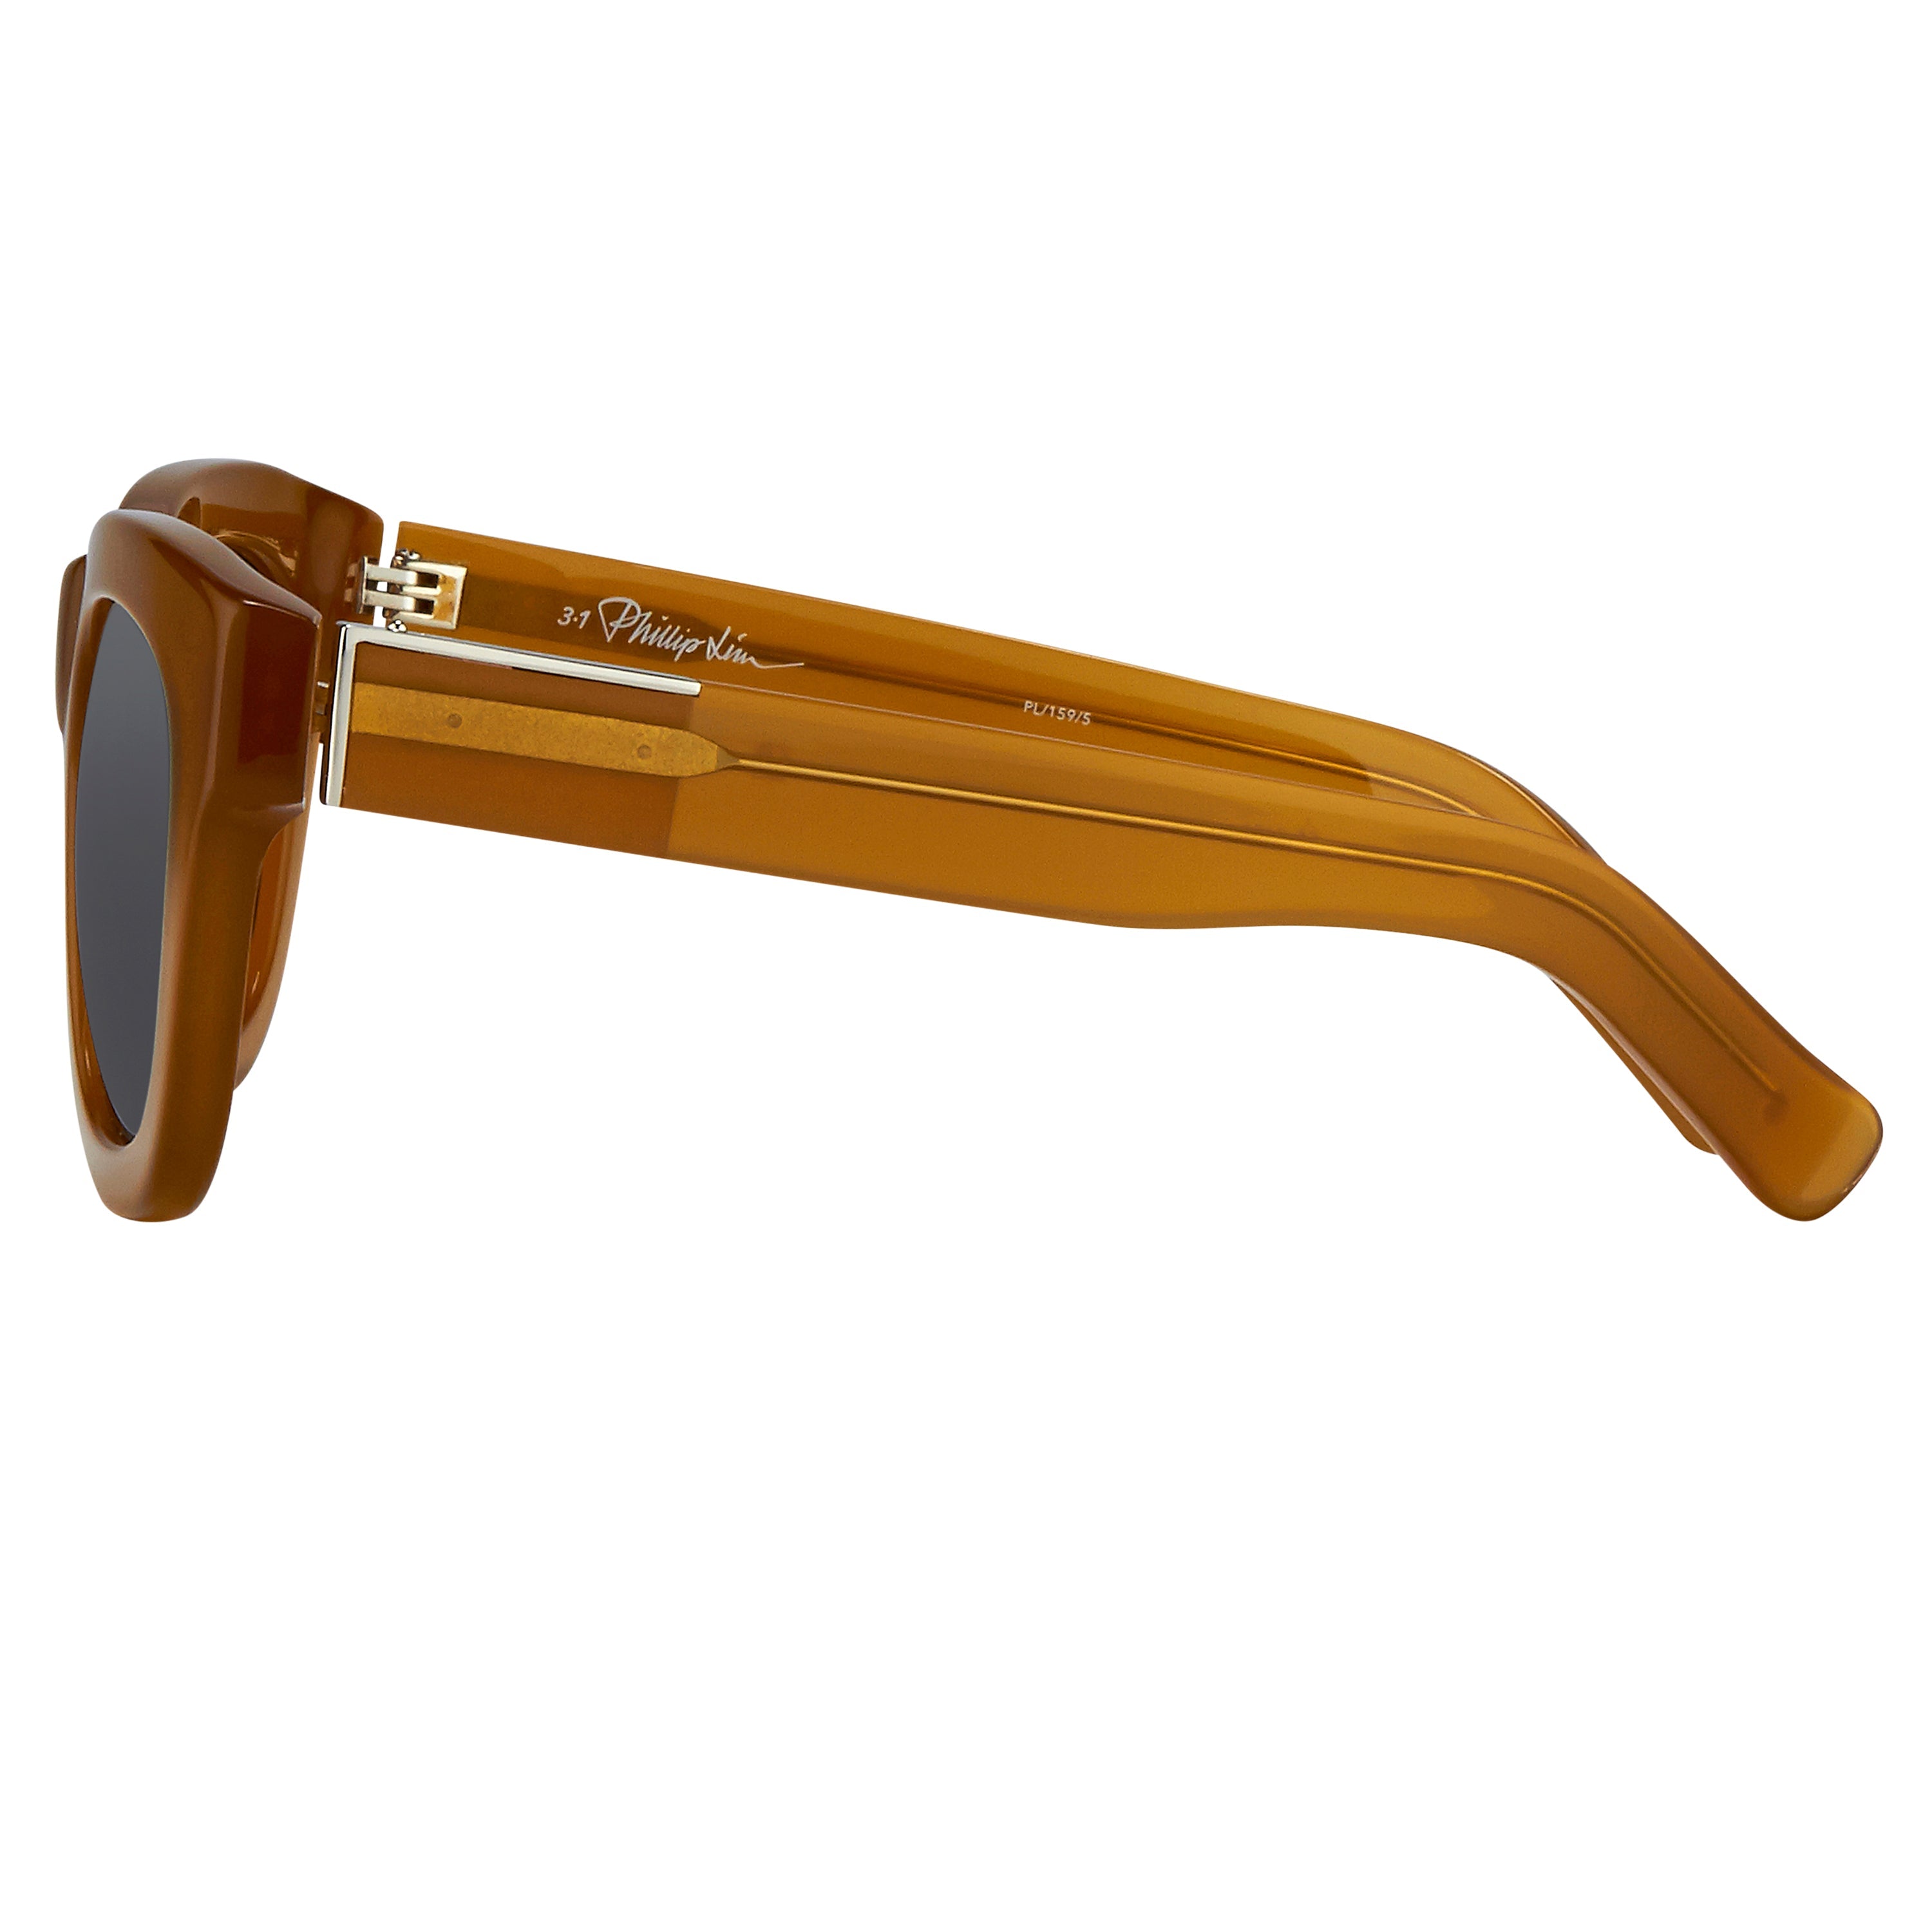 3.1 Phillip Lim 159 C5 D-Frame Sunglasses